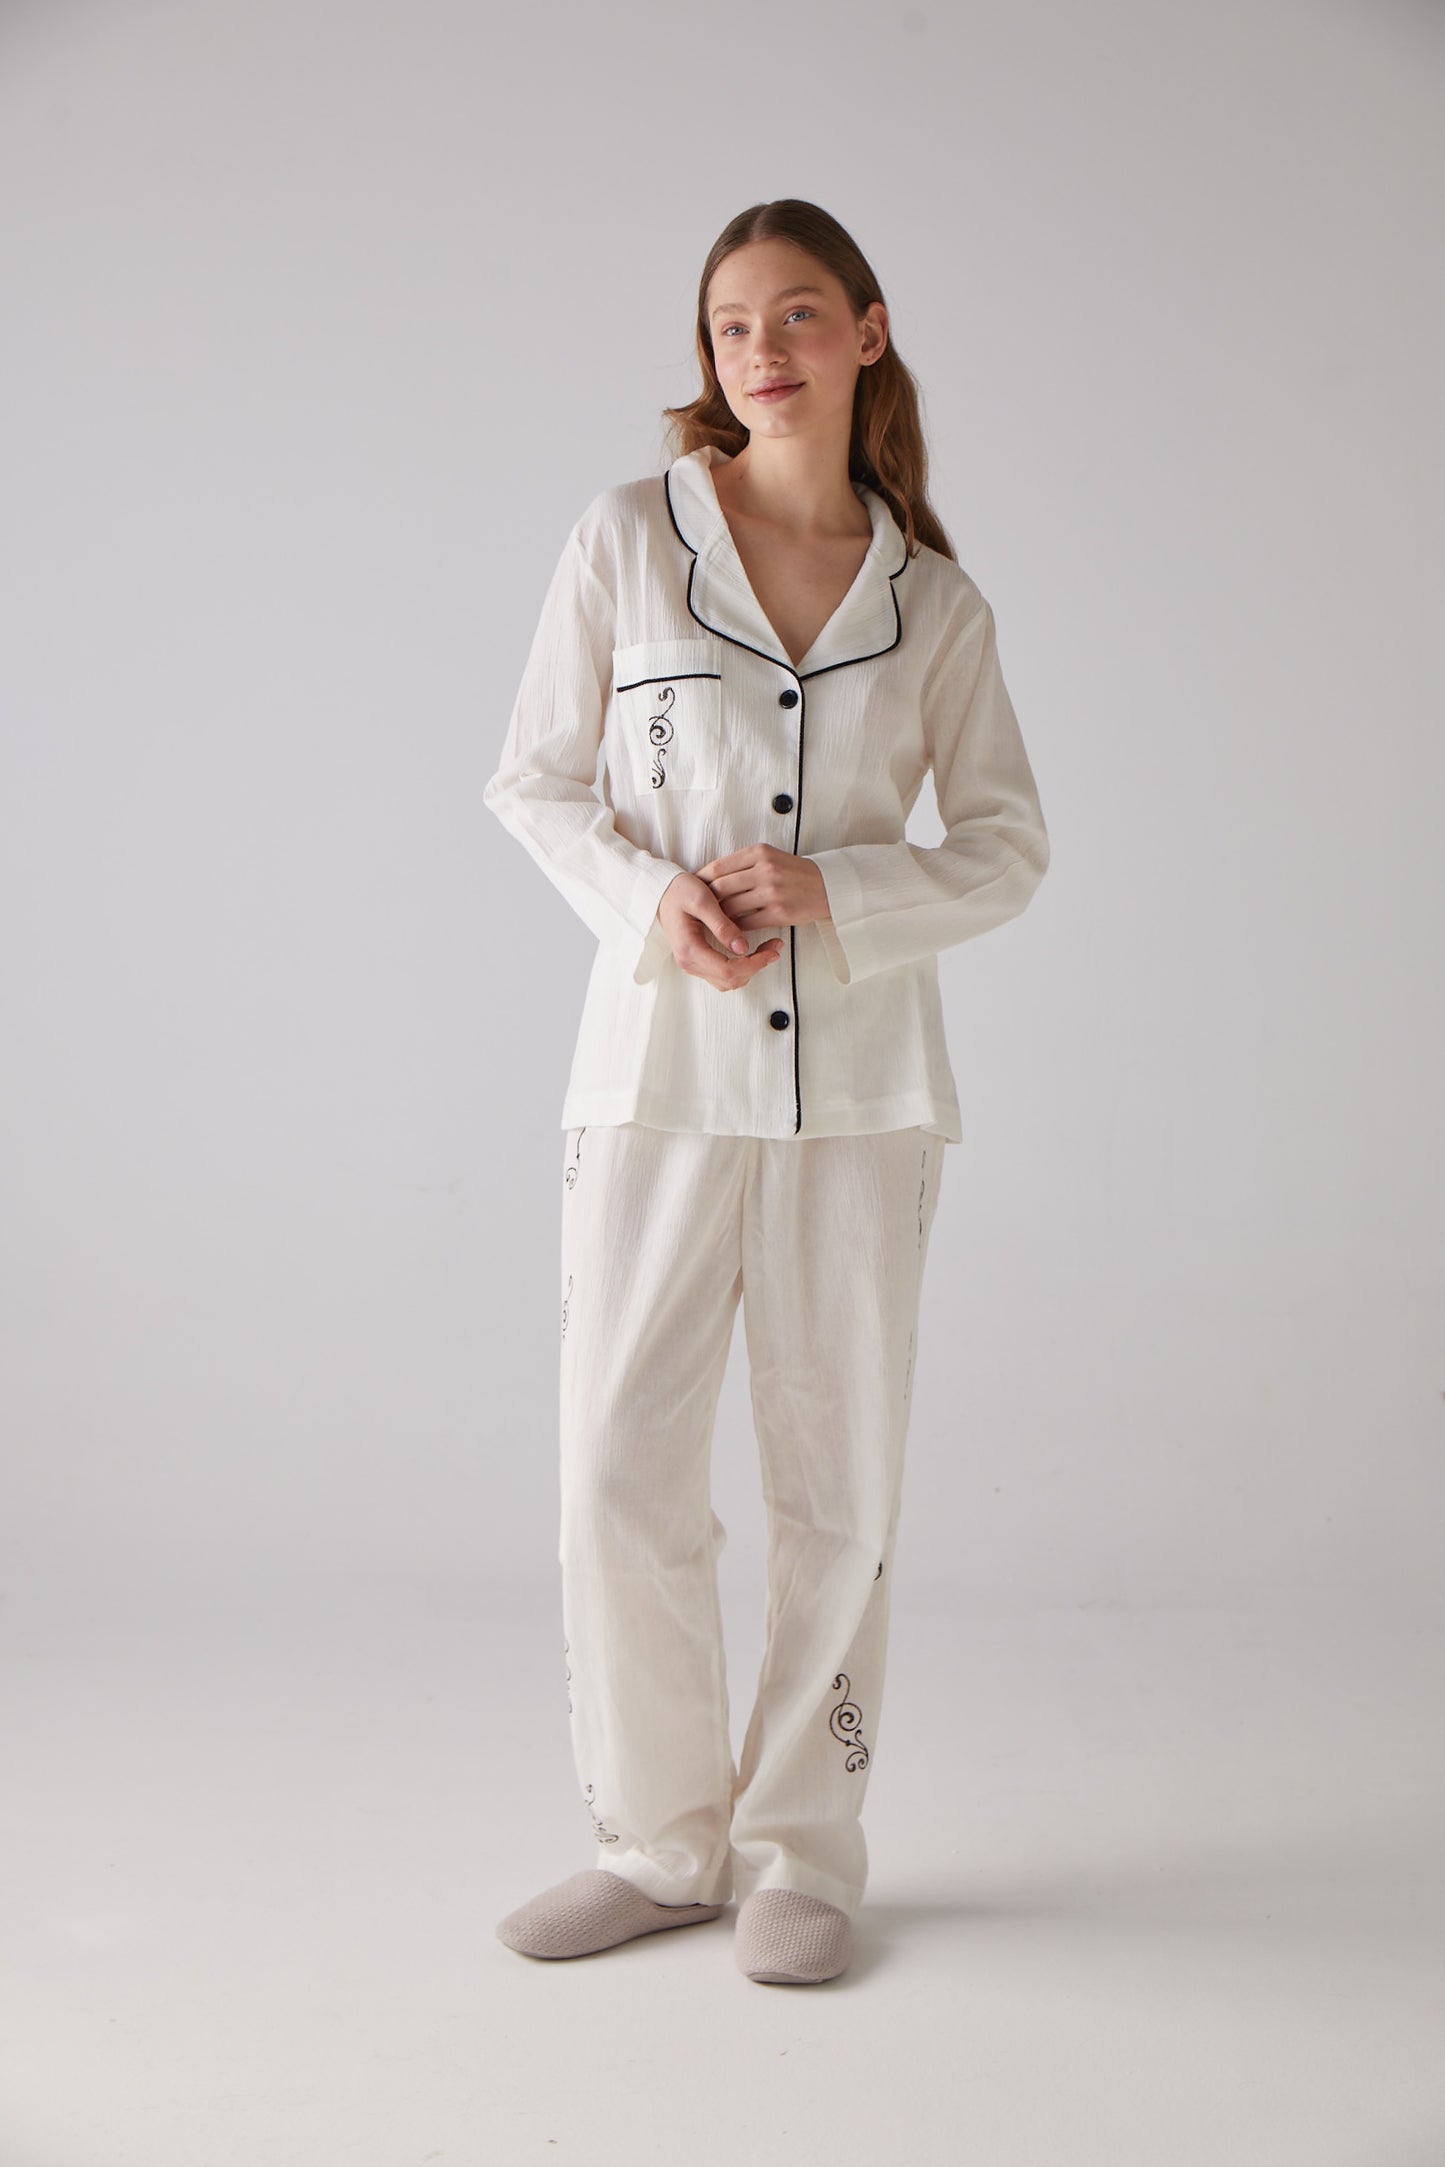 Ensemble Pyjama Long Blanc Motif Clef - 100% Coton Bio